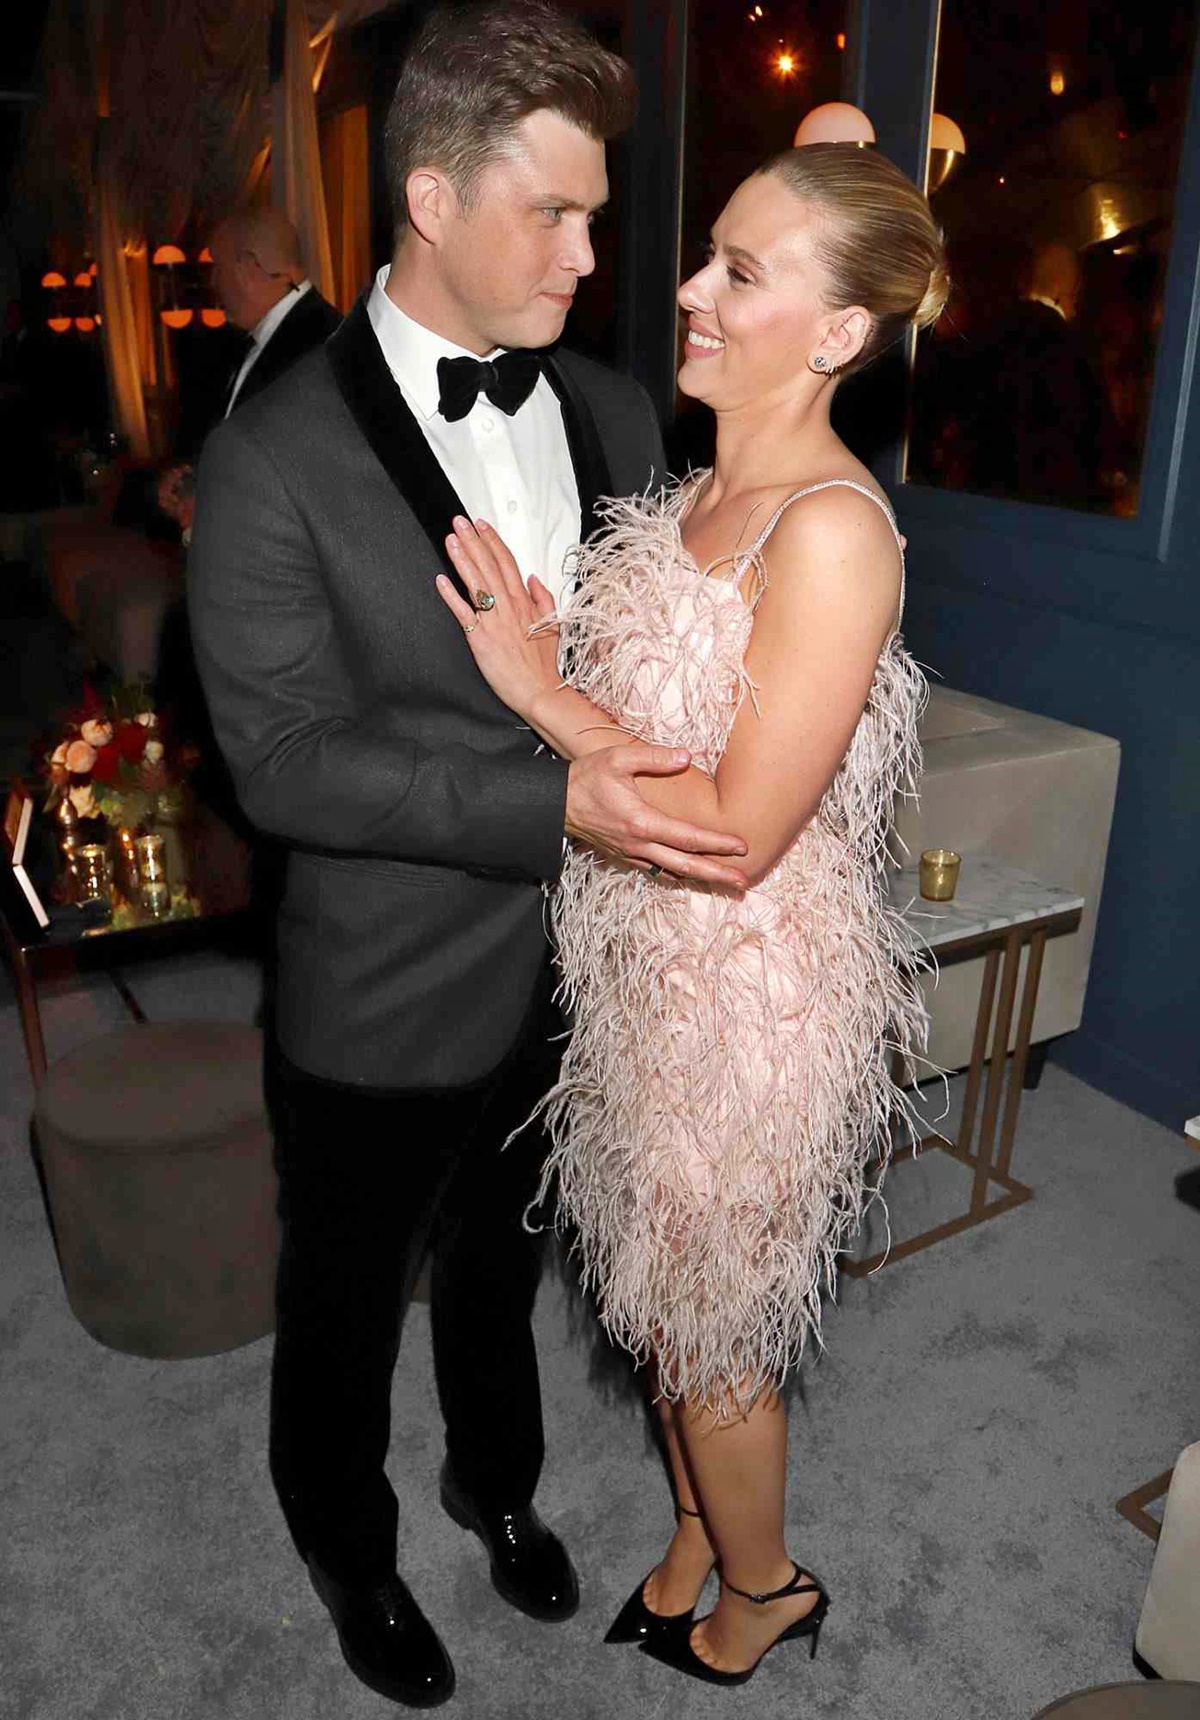 Scarlett Johansson őrülten szerelmes a férjébe: nem fogod elhinni, milyen átlagos pasiról van szó! - Colin Jost